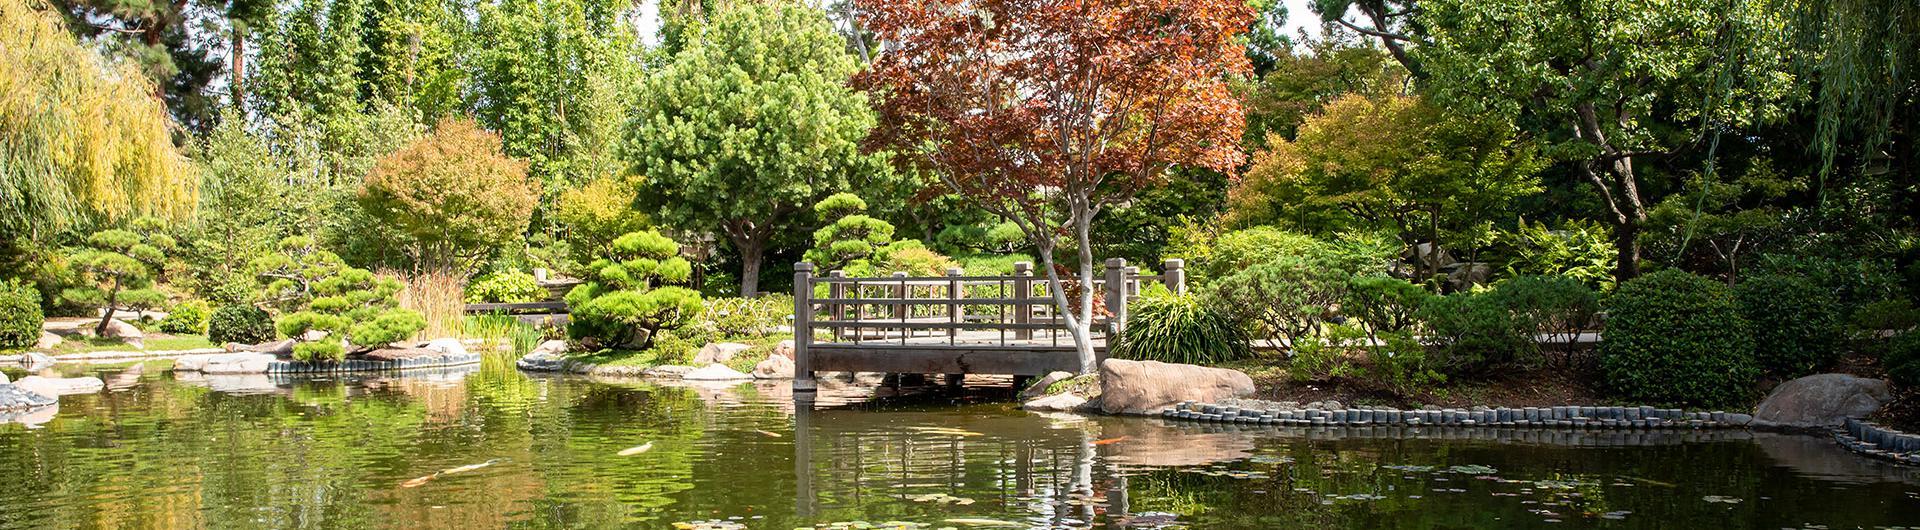 Photo of 日式花园 pond 和 bridge